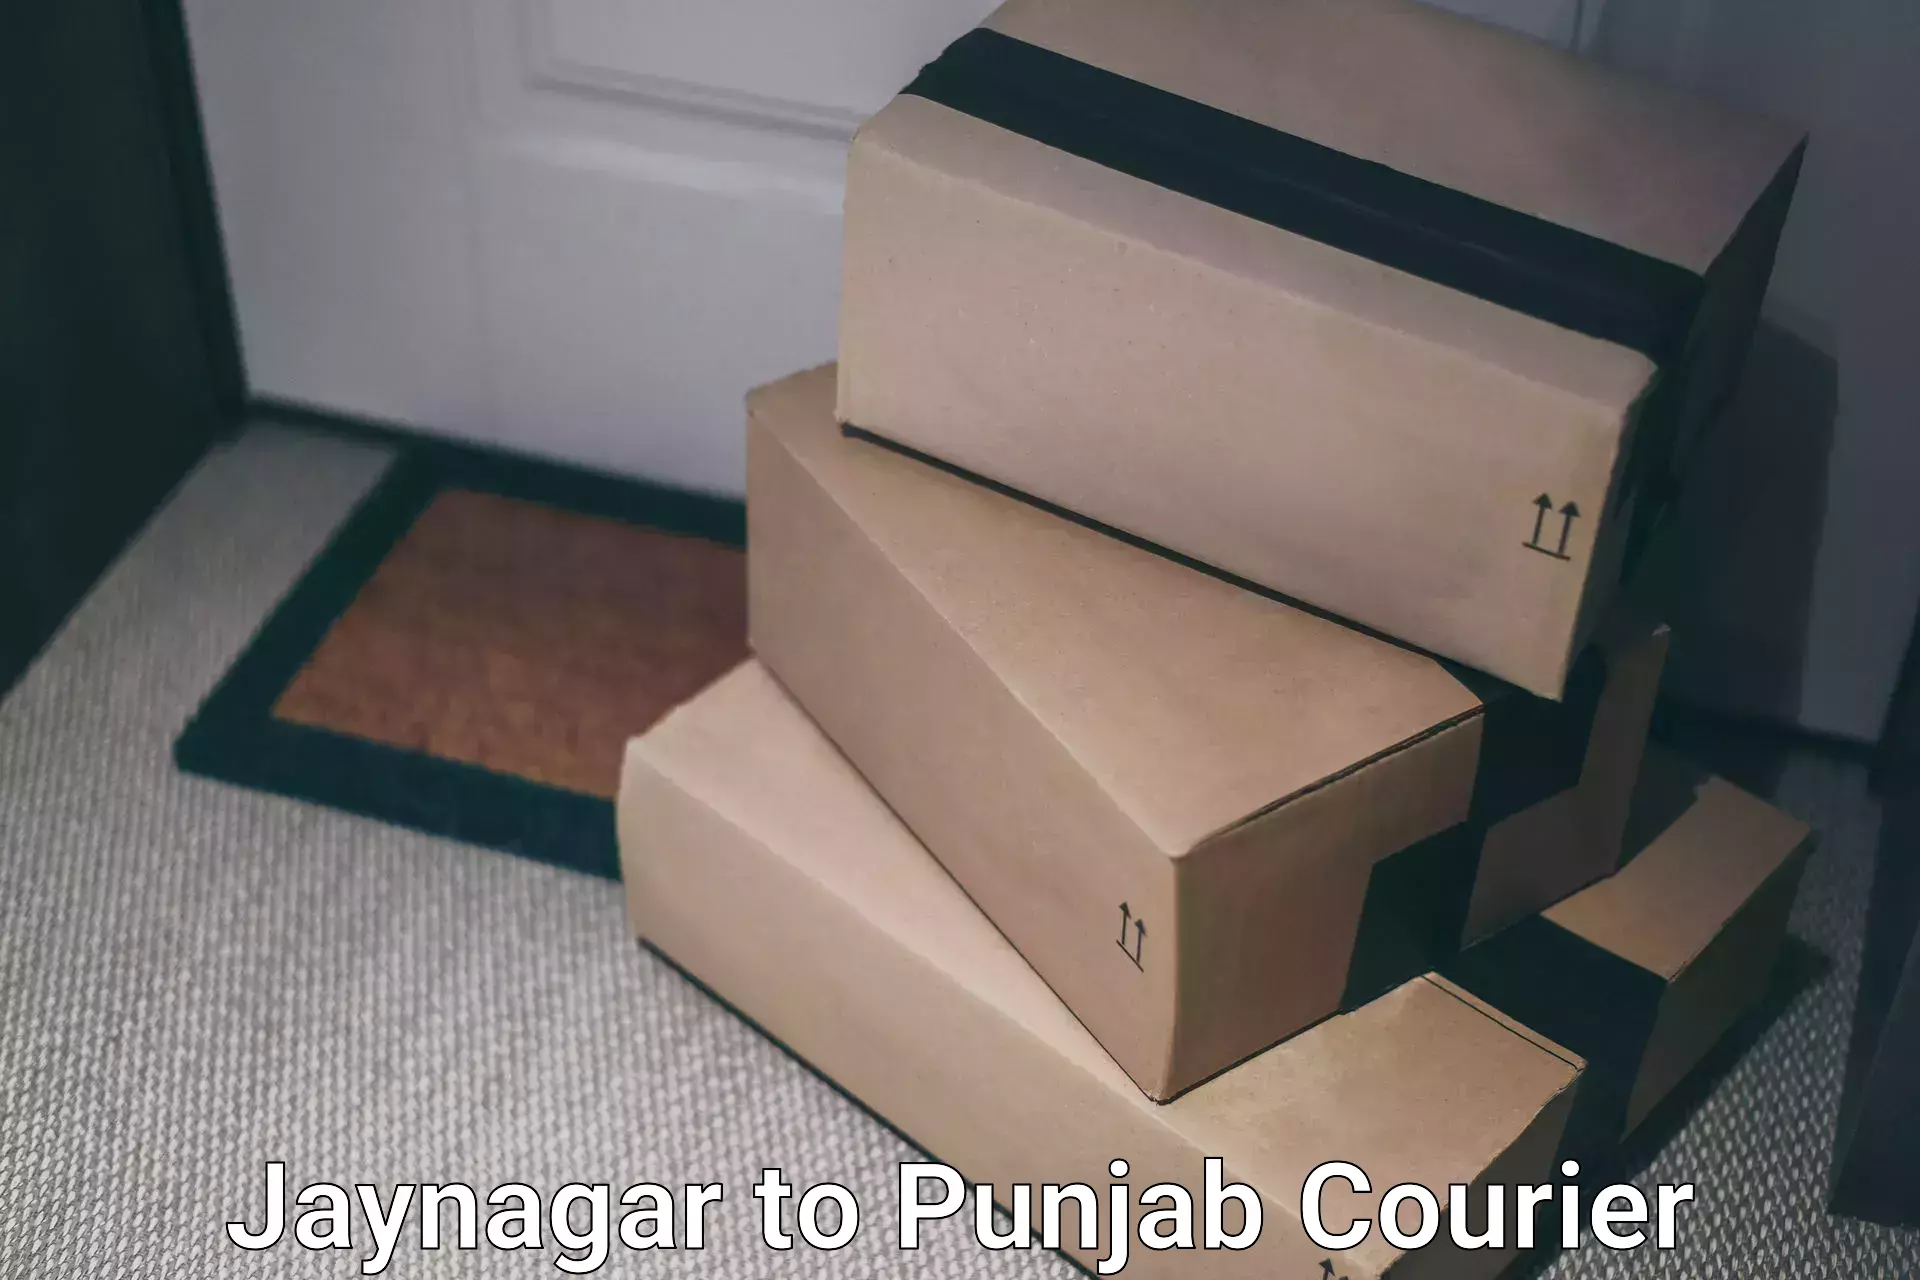 Advanced courier platforms Jaynagar to Punjab